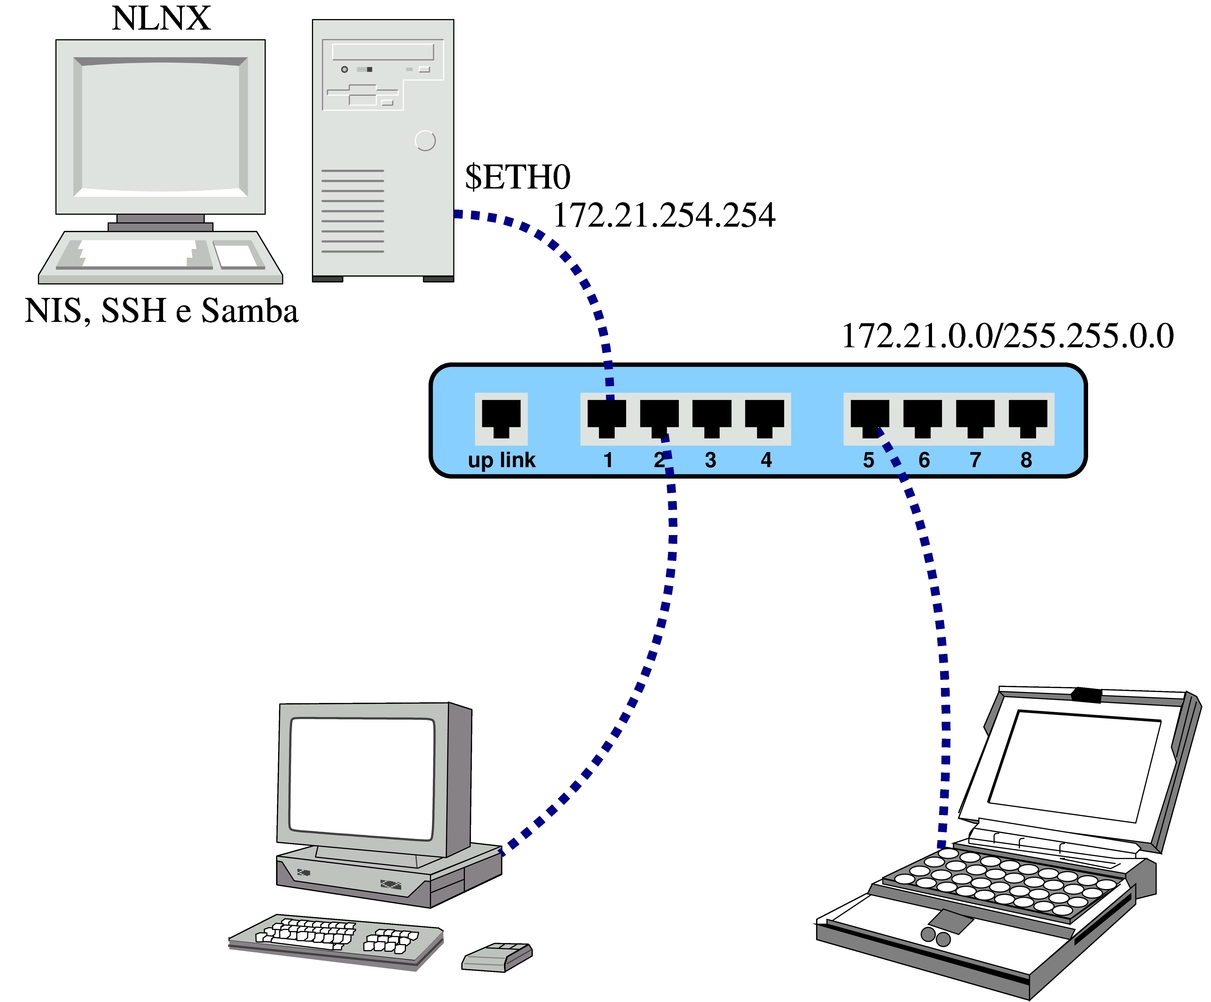 NIS e SSH con NLNX